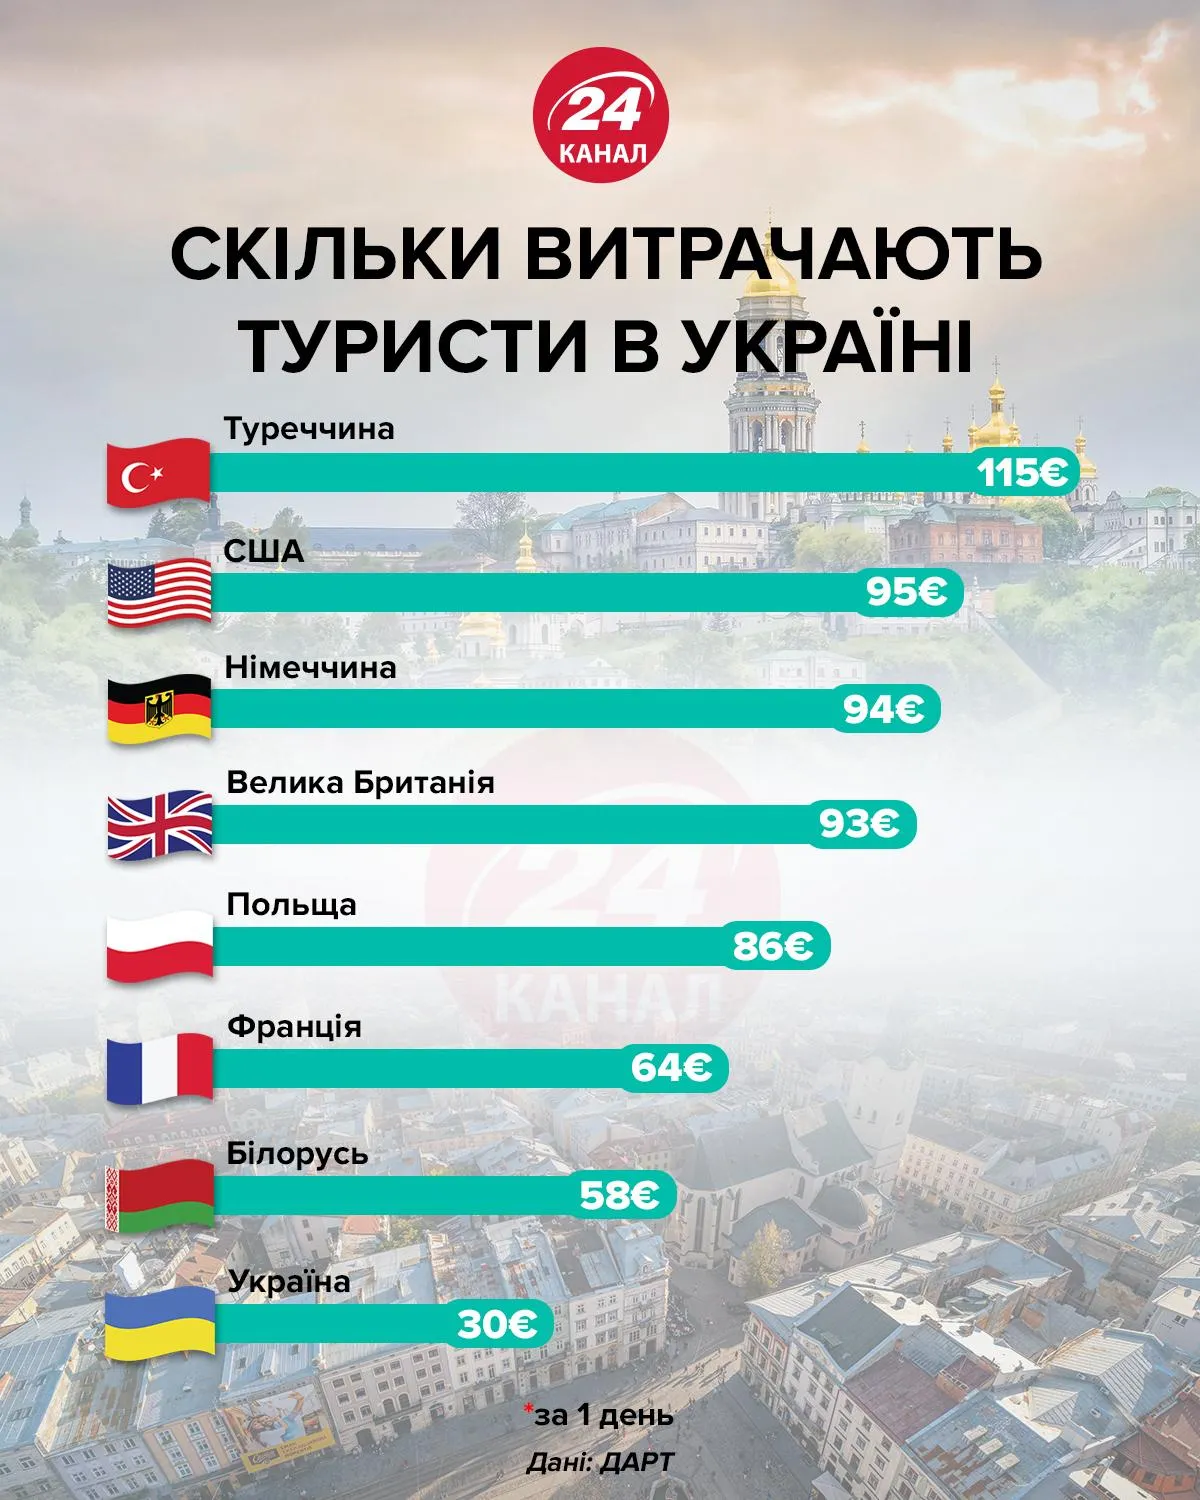 Скільки витрачають іноземці в Україні 24 канал